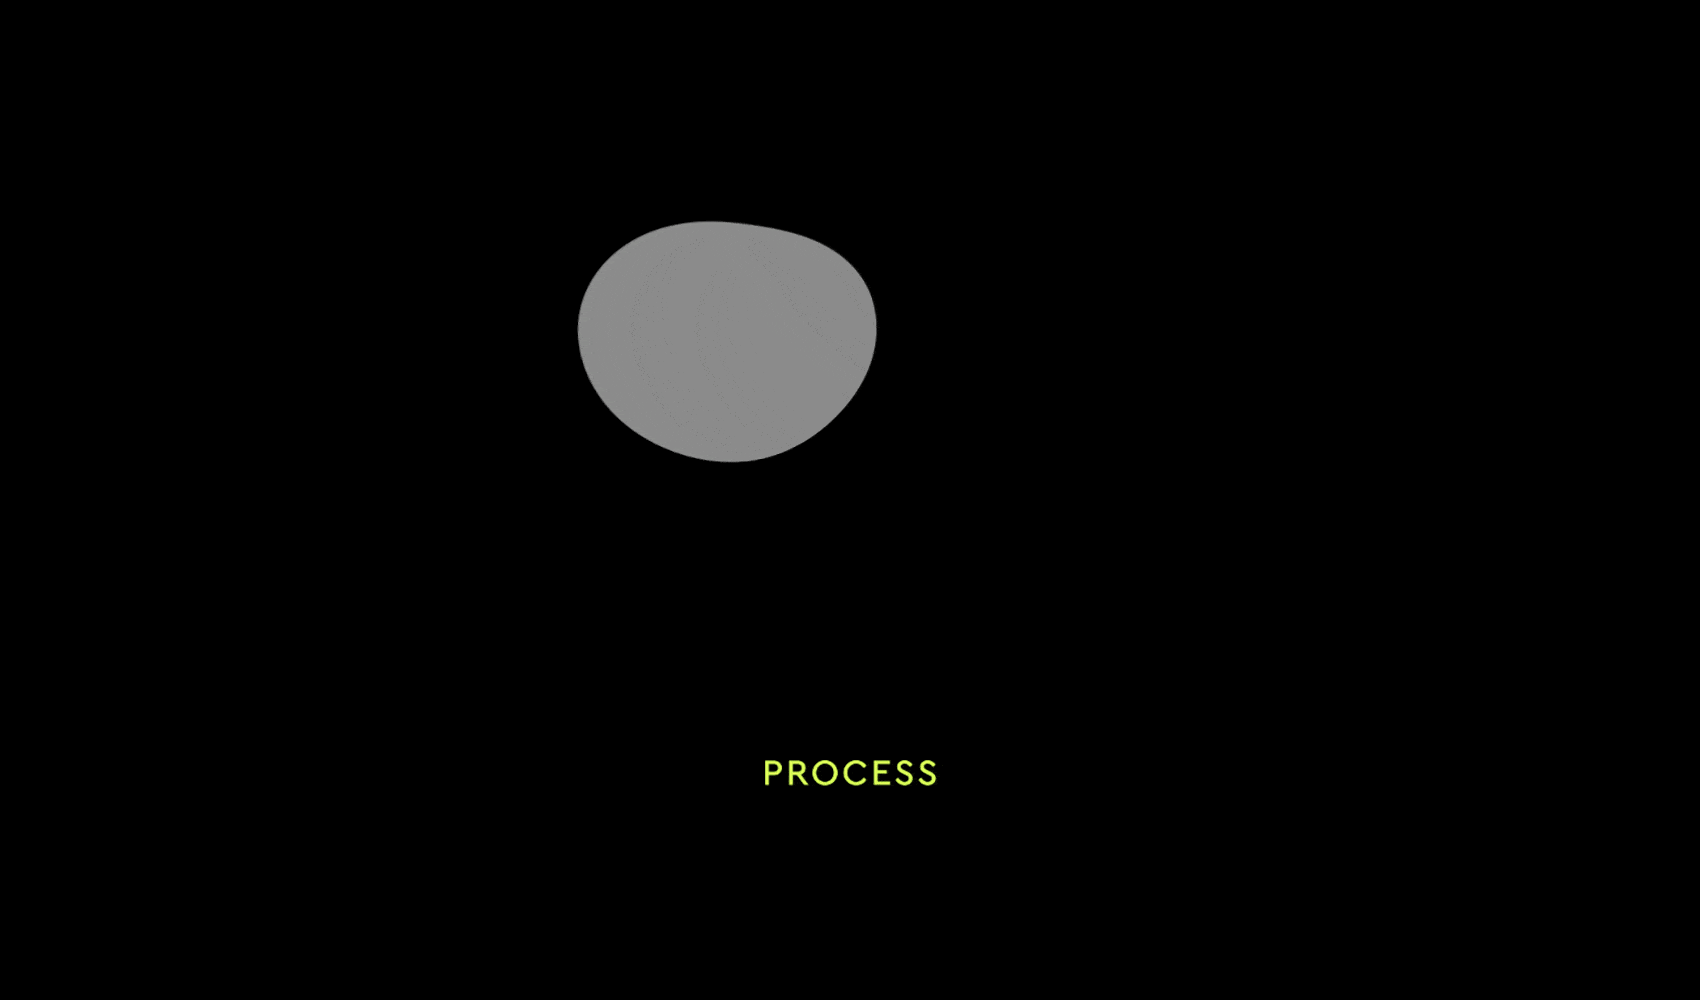 Process